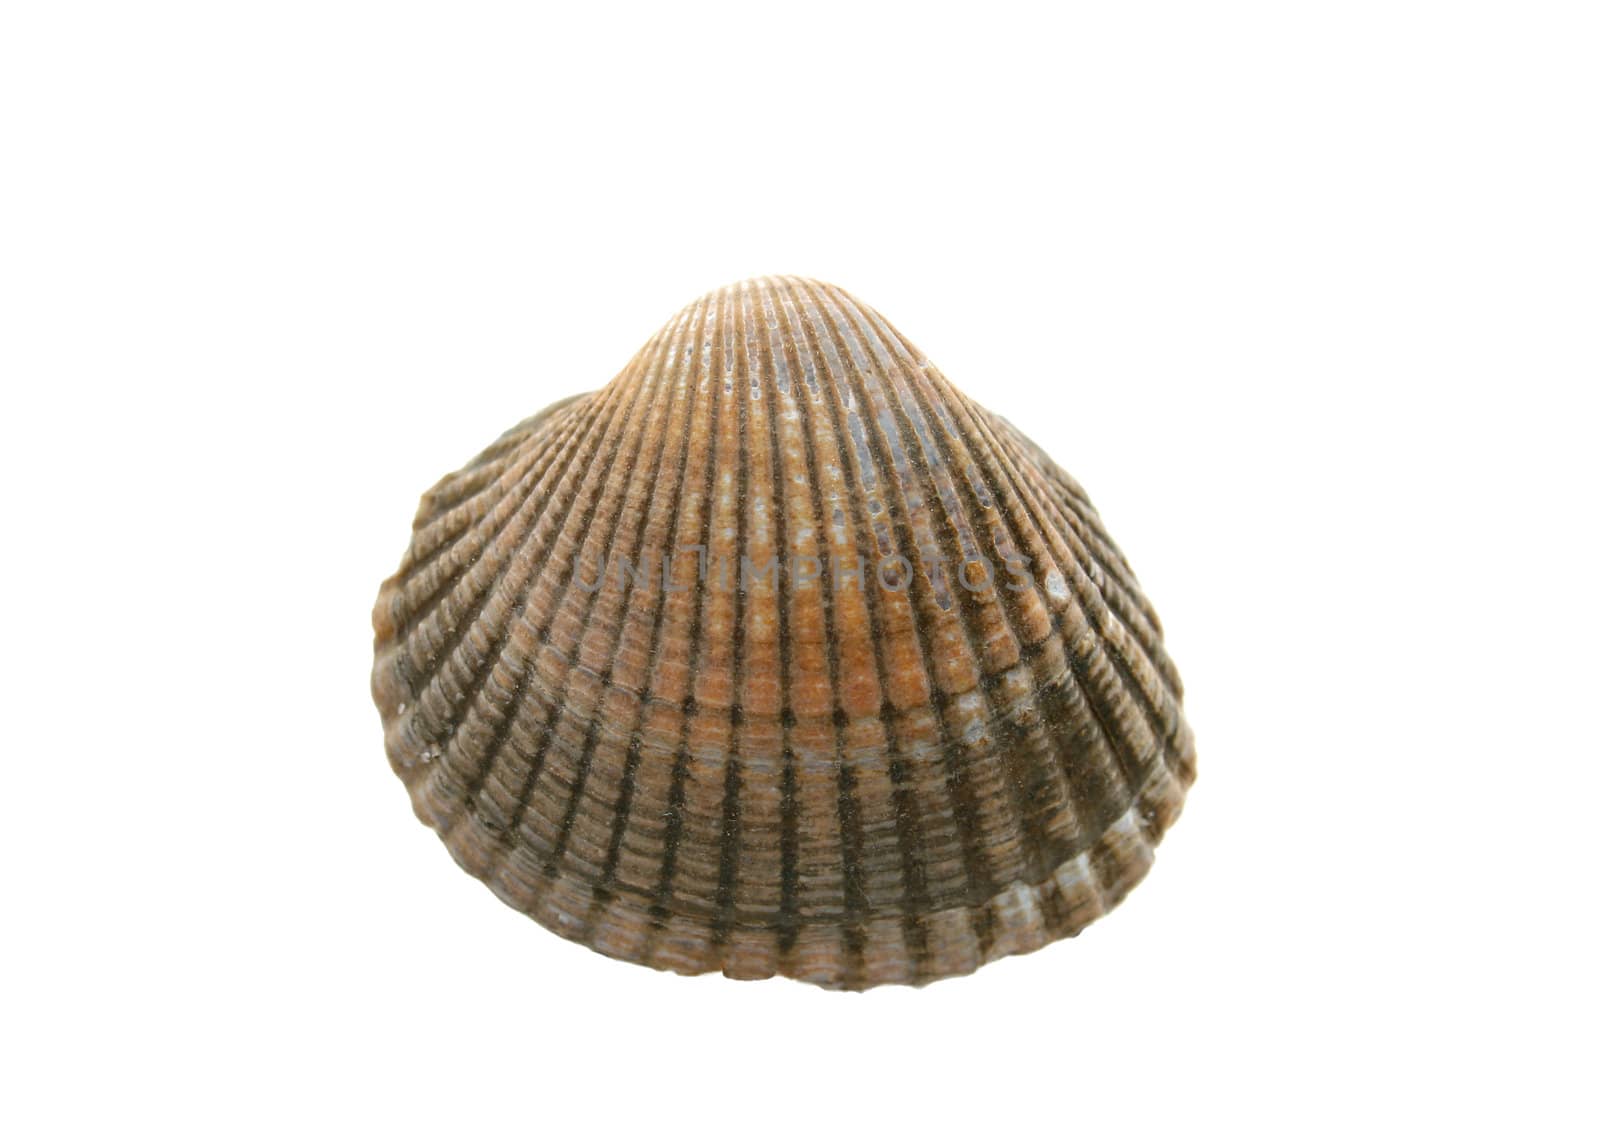 sea shell by Brightdawn